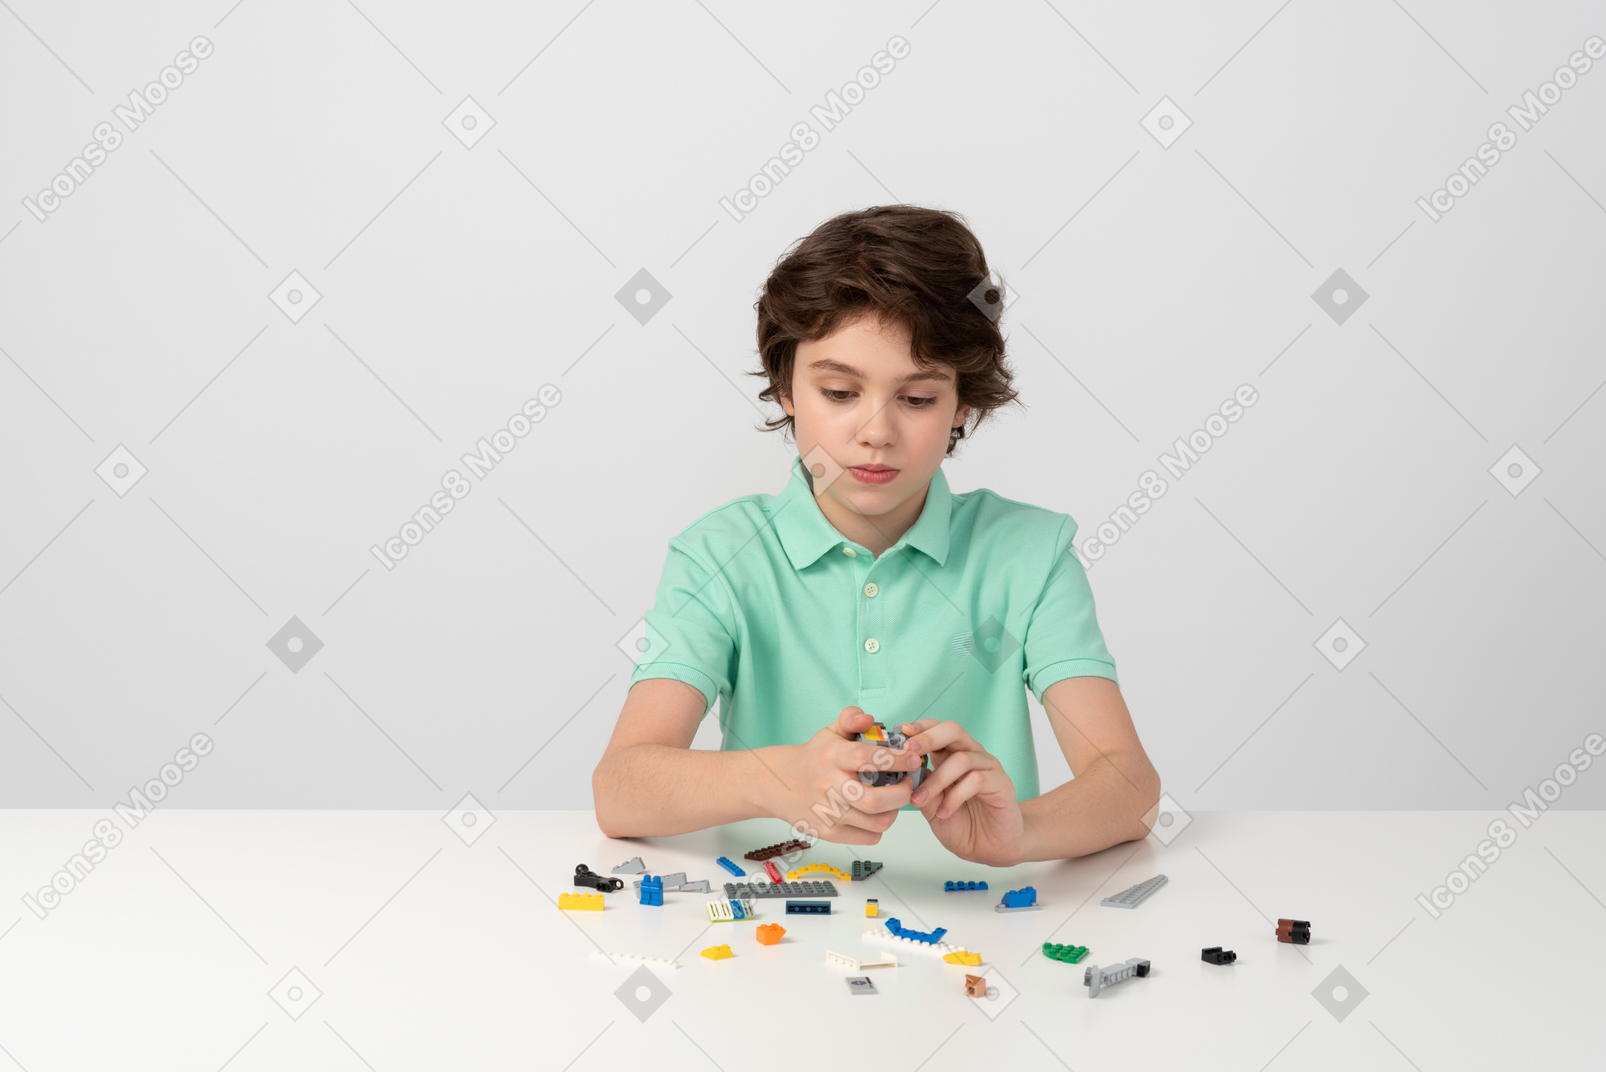 Garçon adolescent jouant avec un jeu de construction